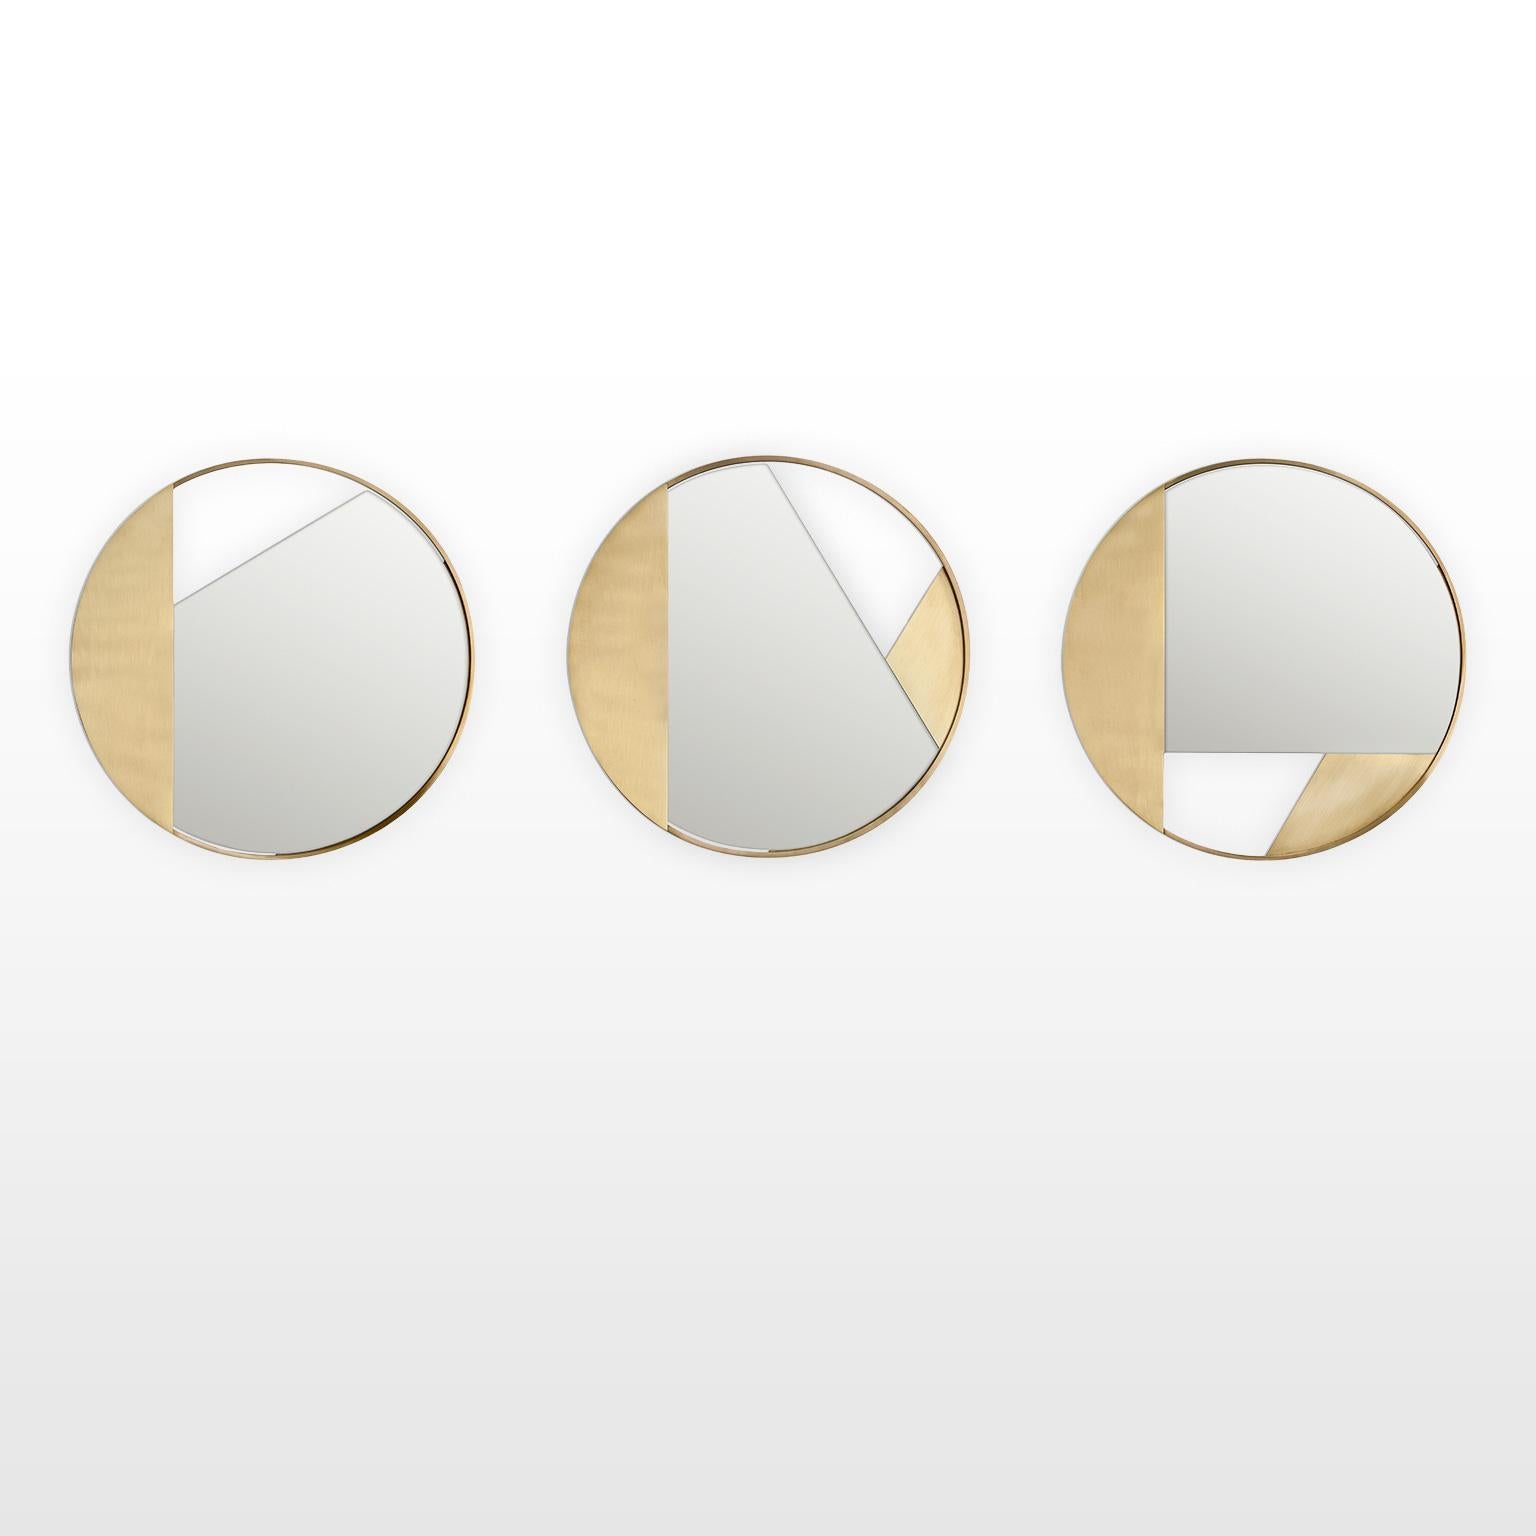 Contemporary Limited Edition Brass Mirror, Revolution 55 V2 by Edizione Limitata For Sale 2